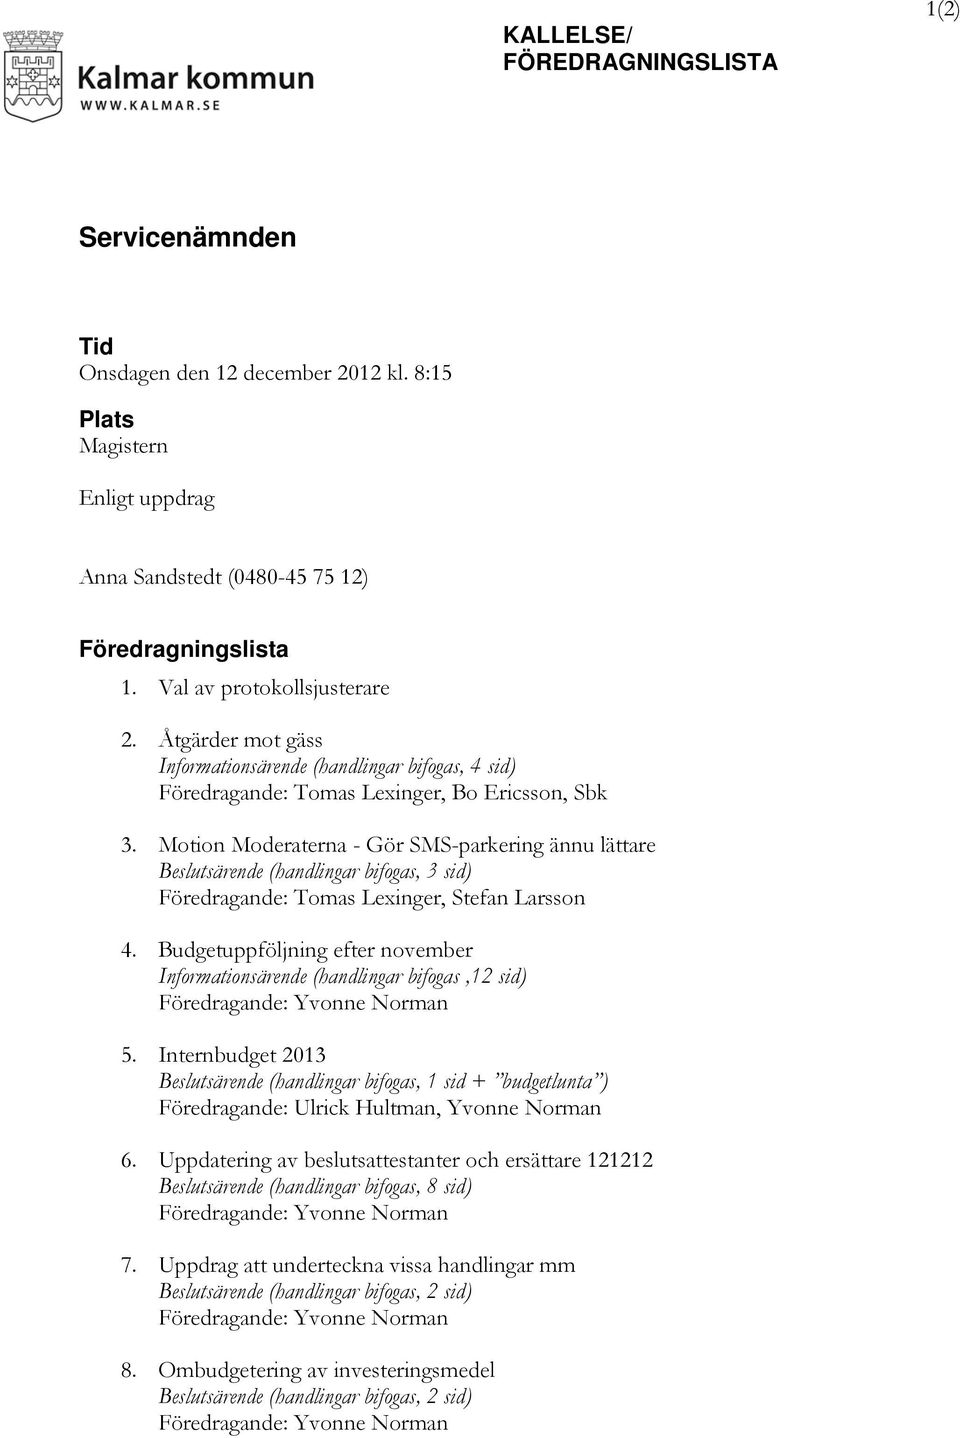 Motion Moderaterna - Gör SMS-parkering ännu lättare Beslutsärende (handlingar bifogas, 3 sid) Föredragande: Tomas Lexinger, Stefan Larsson 4.